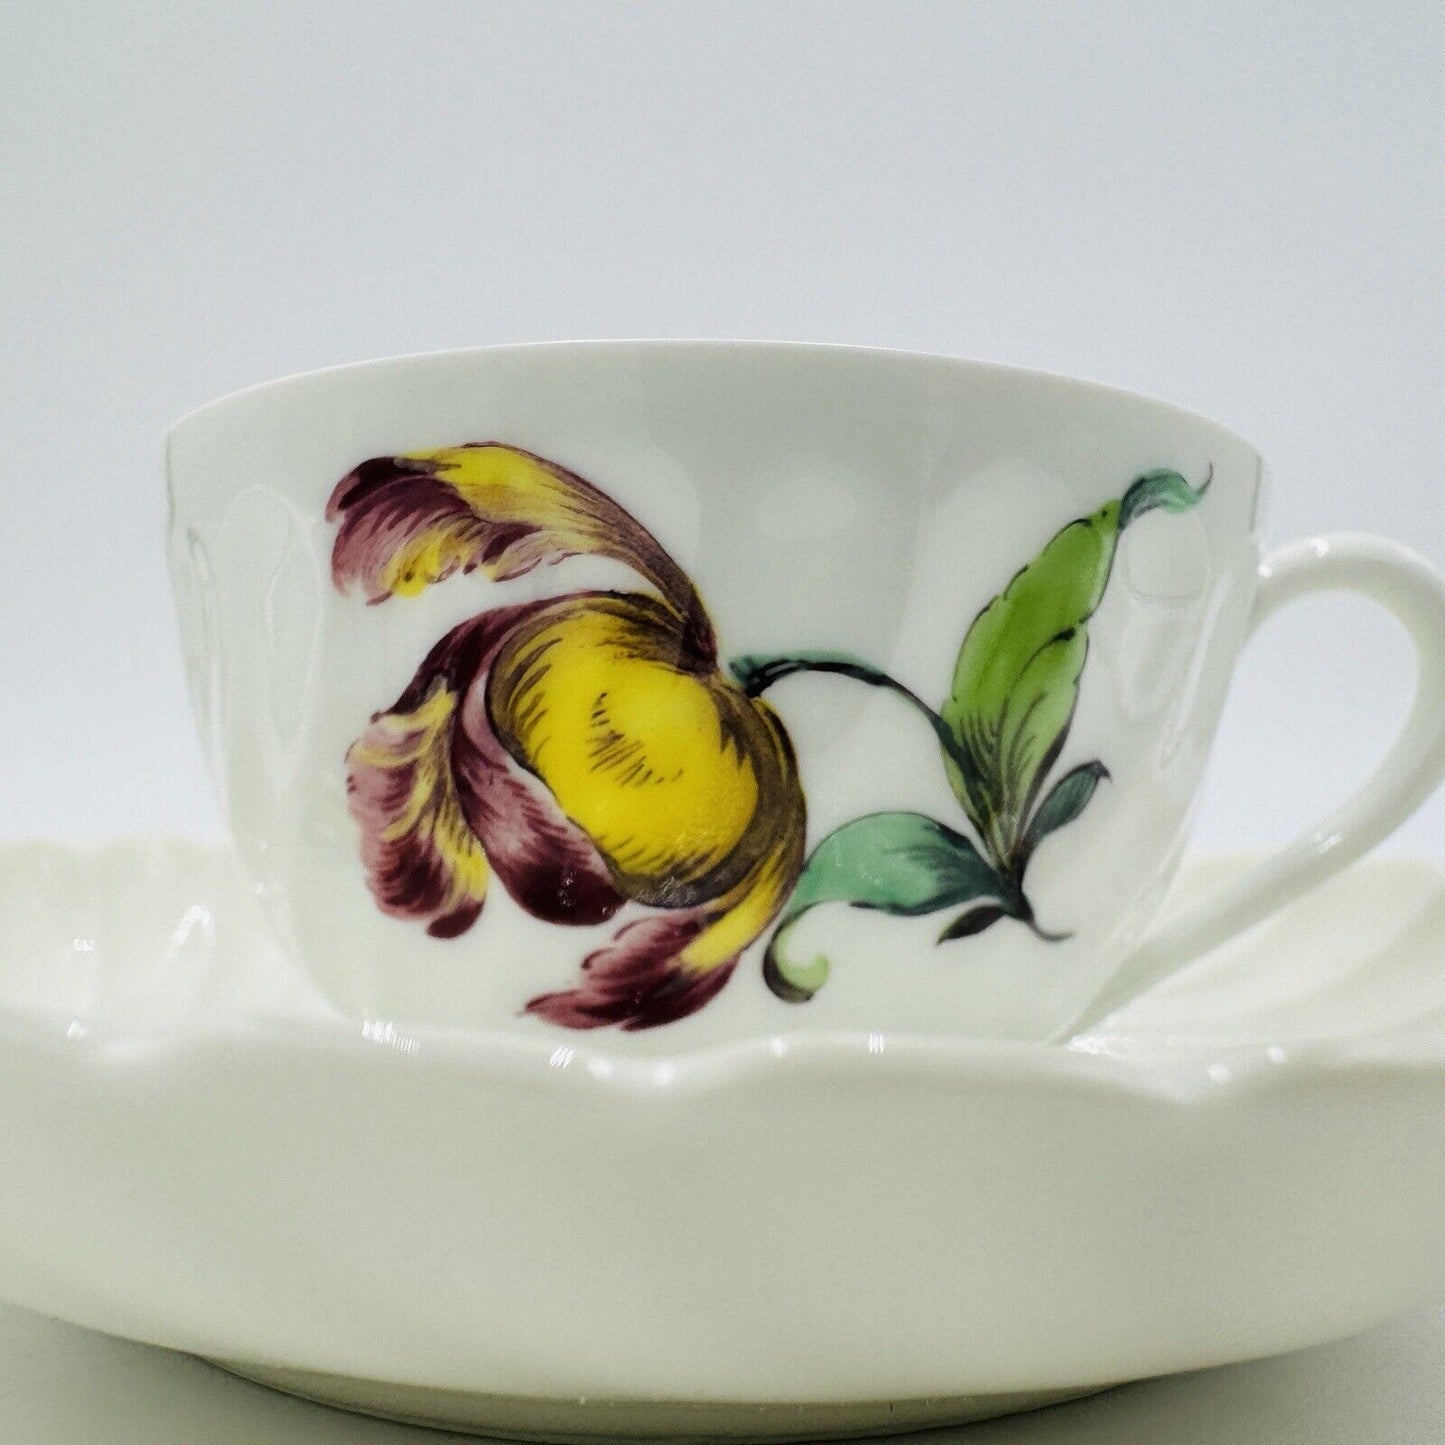 Antique Nymphenburg Porcelain Germany Welle Ribbed Teacup & Saucer 1632 Floral